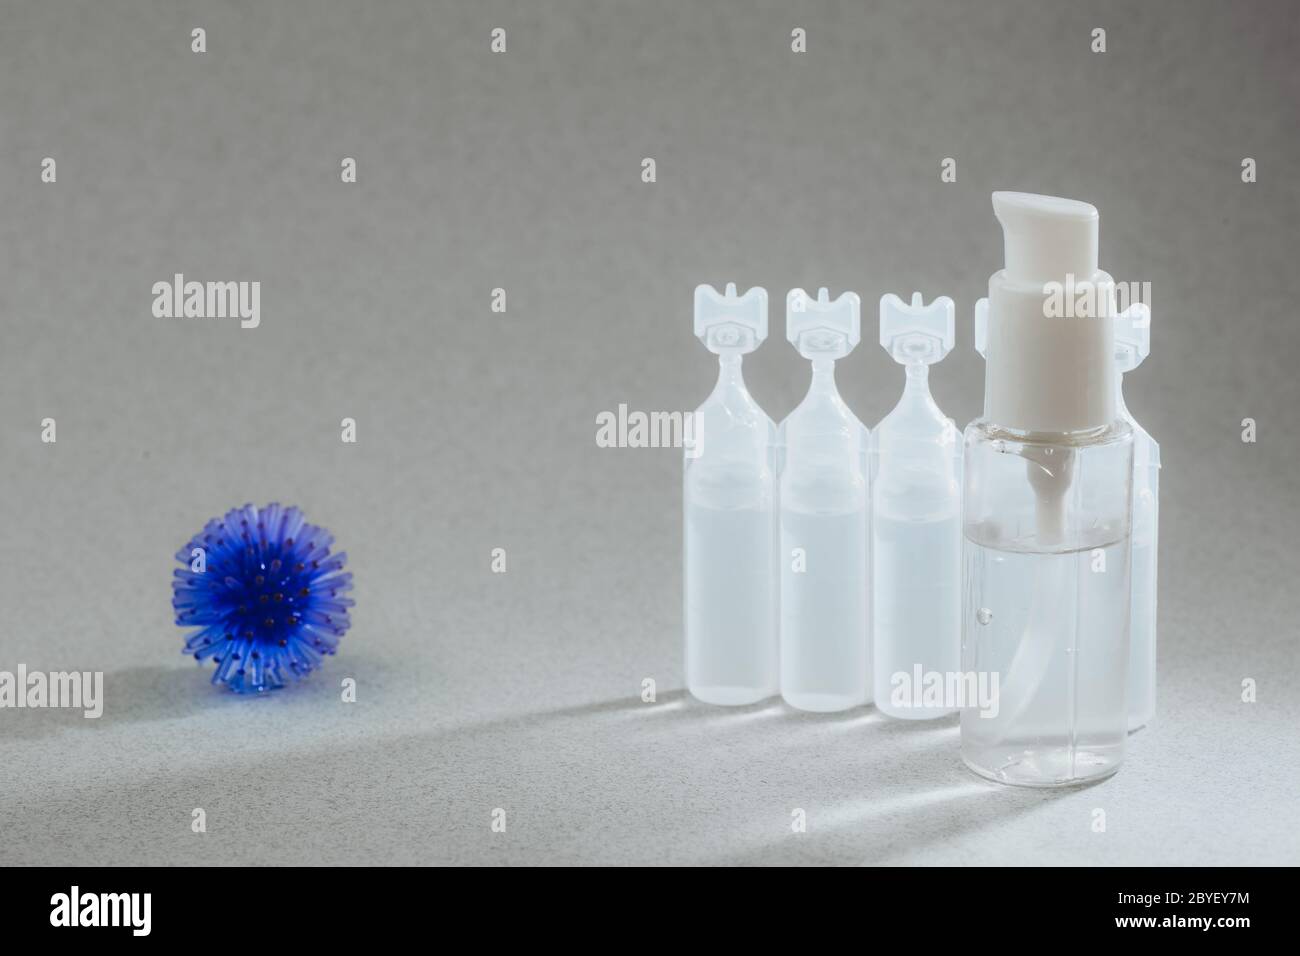 Modèle abstrait du coronavirus, ampoule avec médicament et flacon avec gel antibactérien pour les mains sur fond gris. Concept d'hygiène pour combattre le virus. Banque D'Images